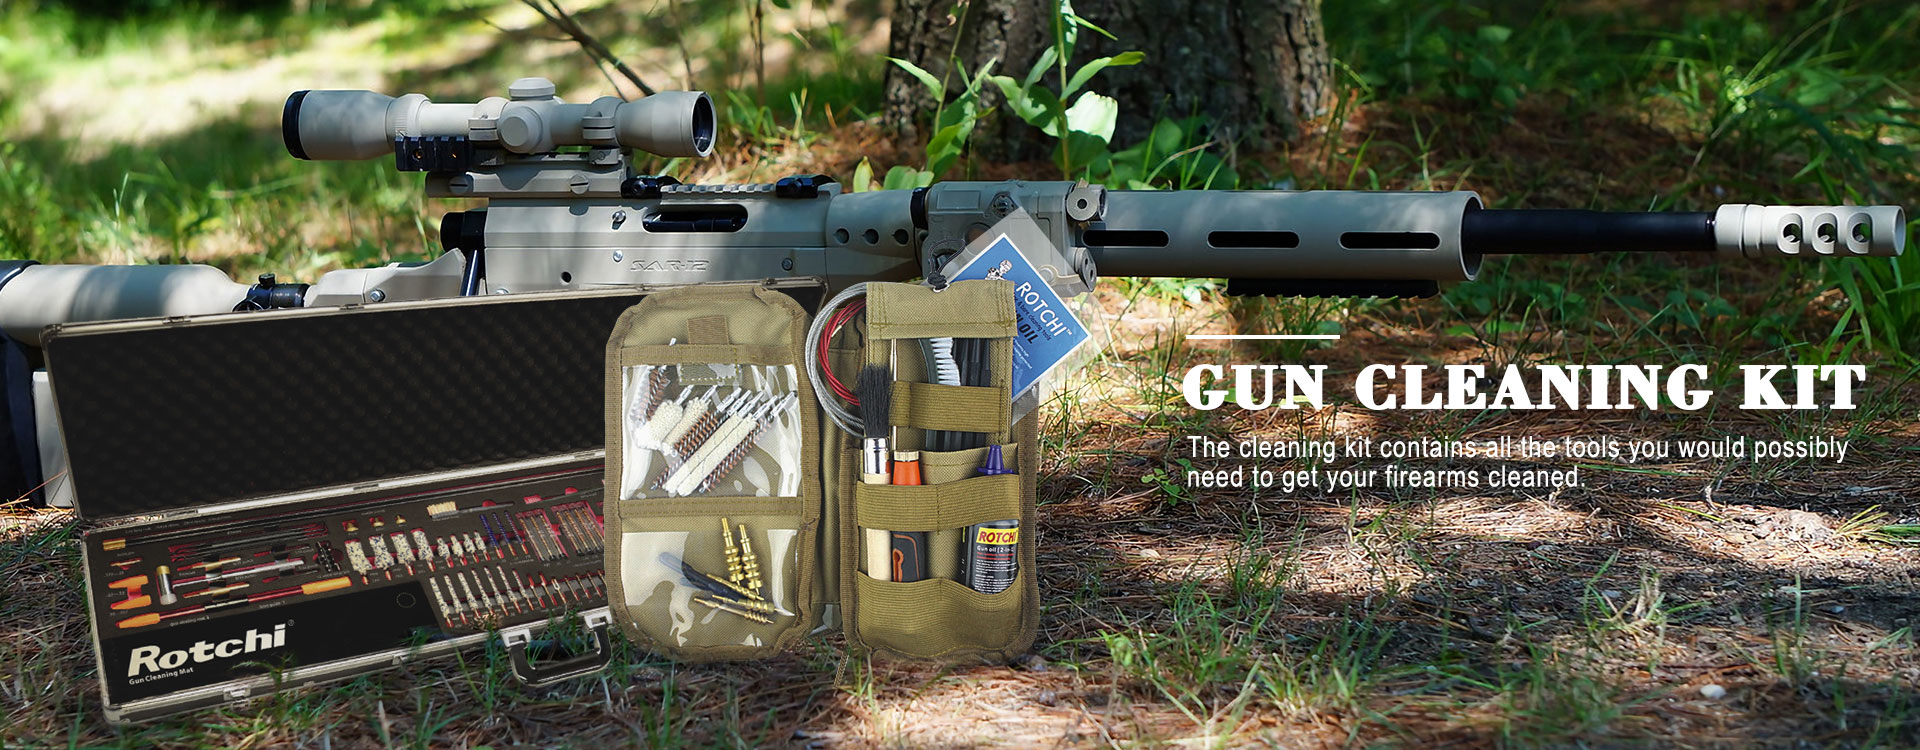 Kit de limpieza de pistola con carcasa de aluminio todo en uno de lujo